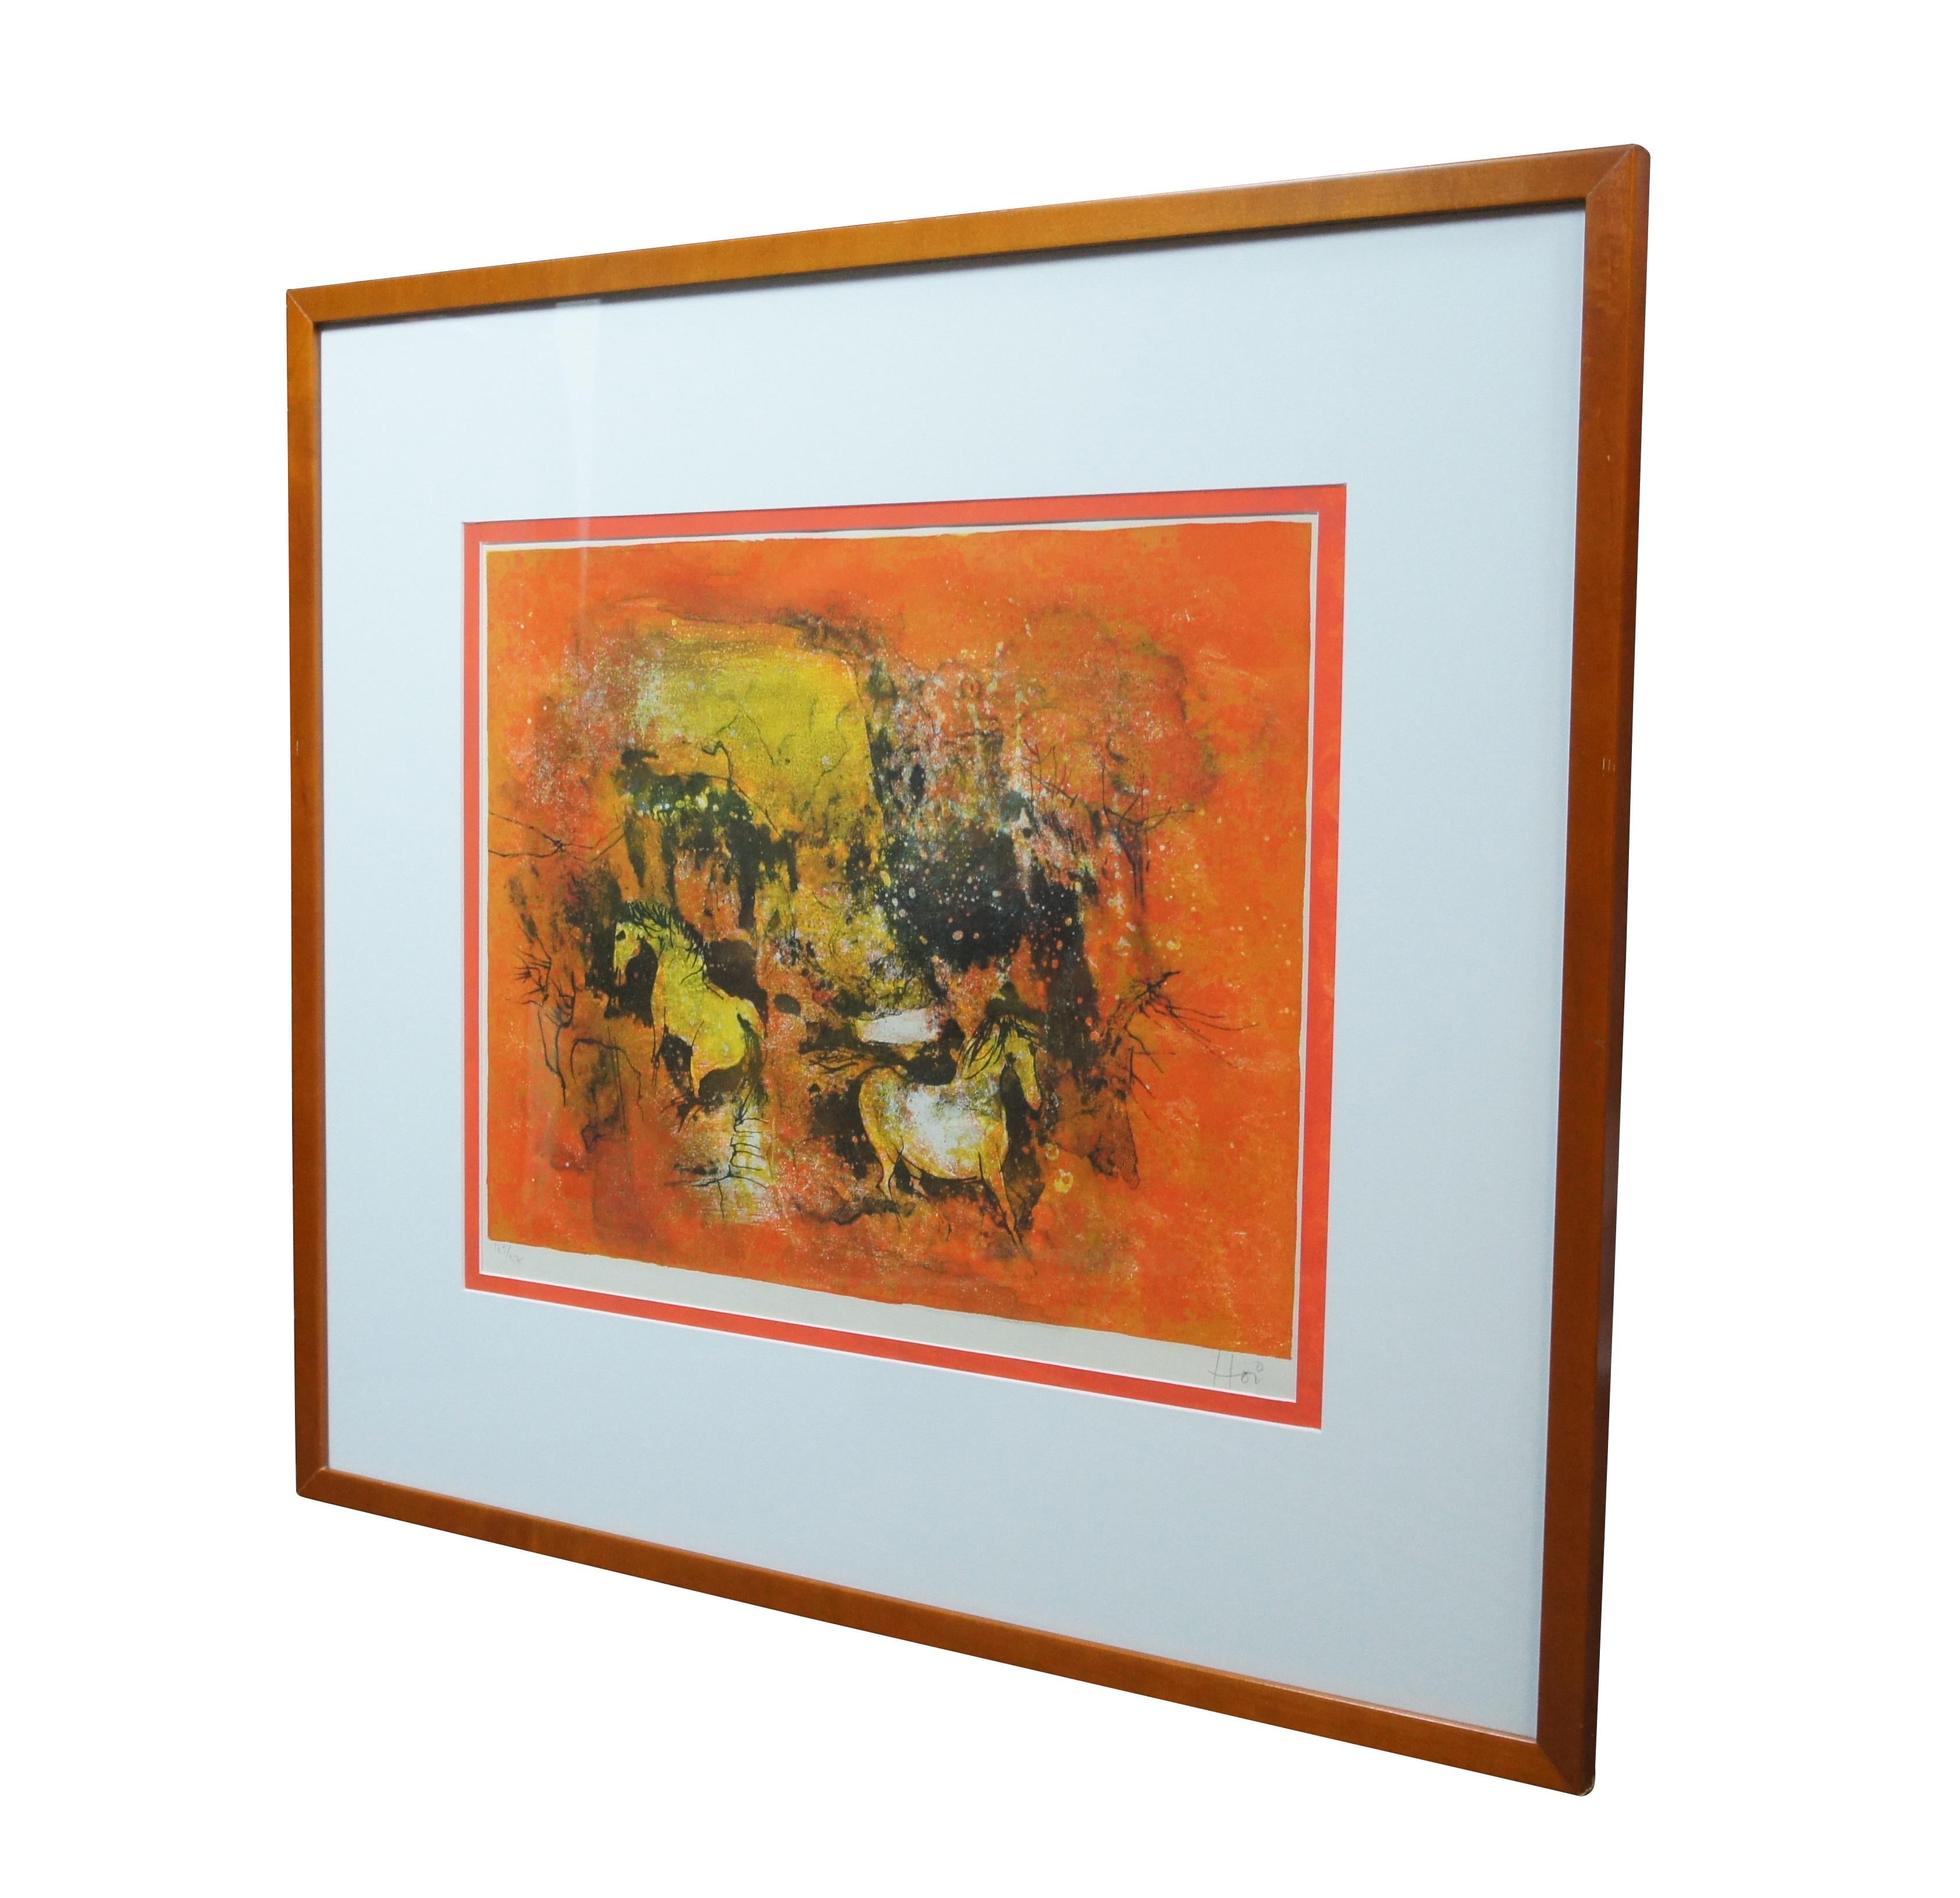 Stampa litografica di Hoi Ledabang della metà del secolo scorso. Mostra una coppia astratta di cavalli in un paesaggio giallo e arancione. Firmato a matita Hoi (in basso a destra) e numerato 165/375 (in basso a sinistra). Certificato di